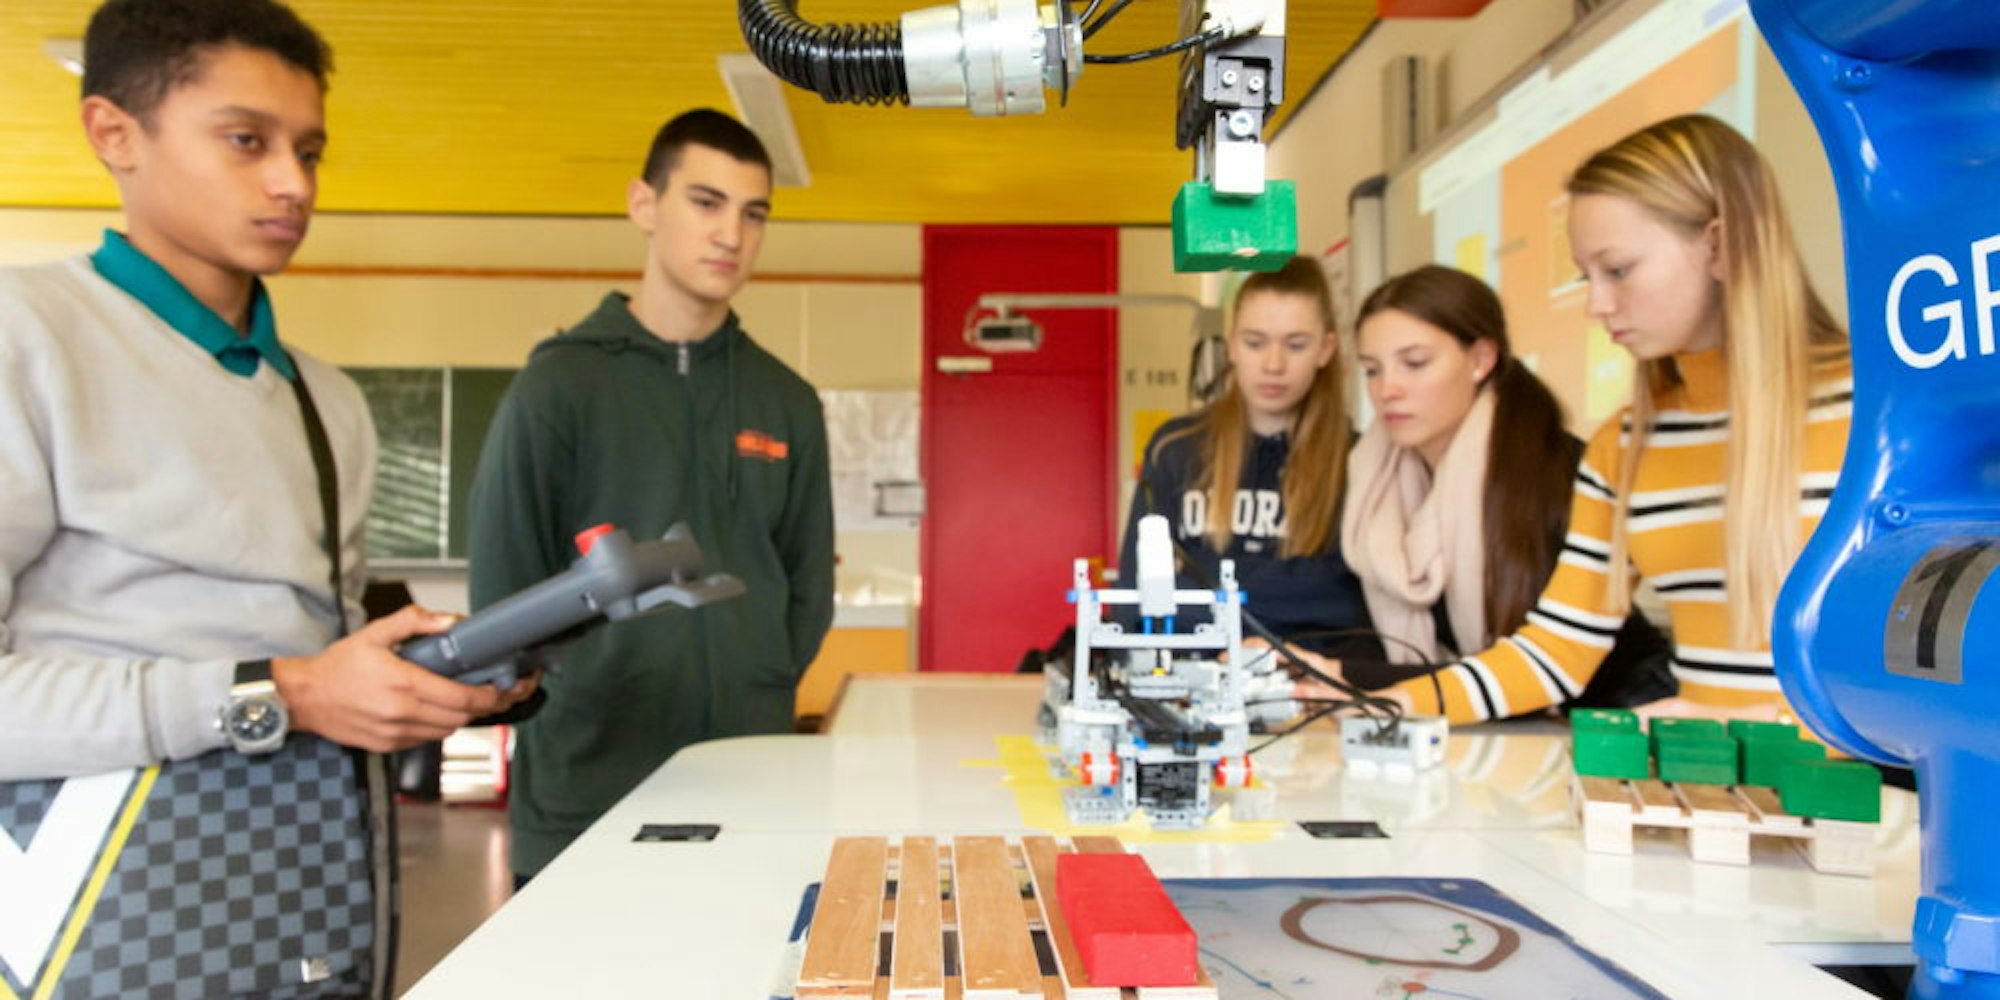 Wie der blaue Roboterarm zu programmieren und bedienen ist, das lernen Berkumer Schüler jetzt im Unterricht.